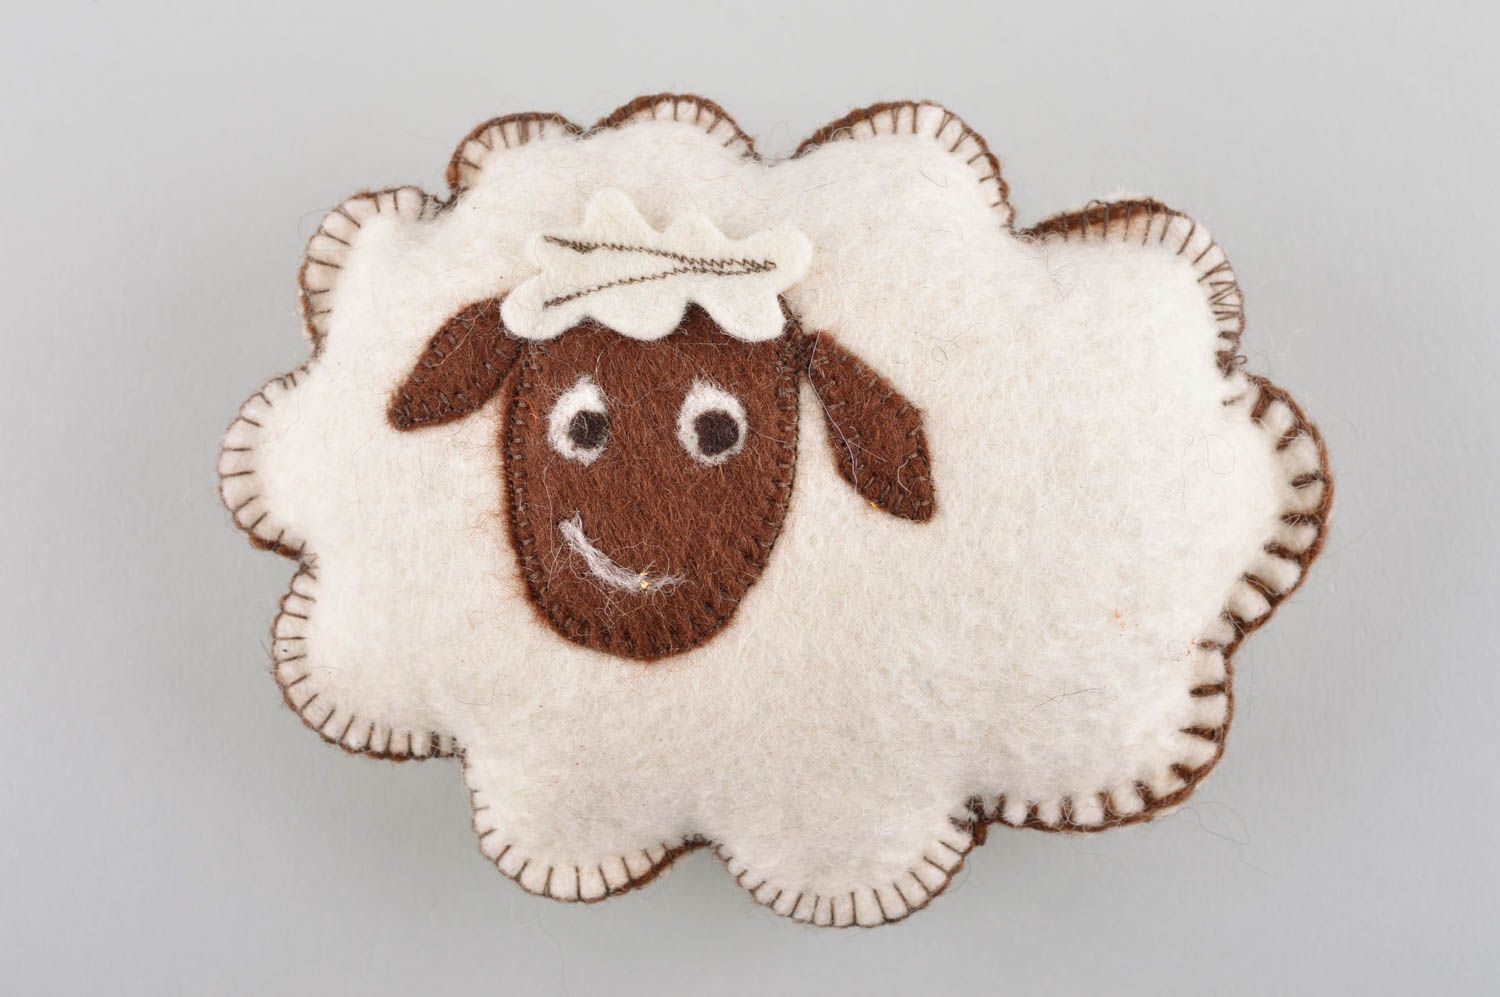 Игрушка мягкая овечка игрушка ручной работы игрушка из валяной шерсти фото 2